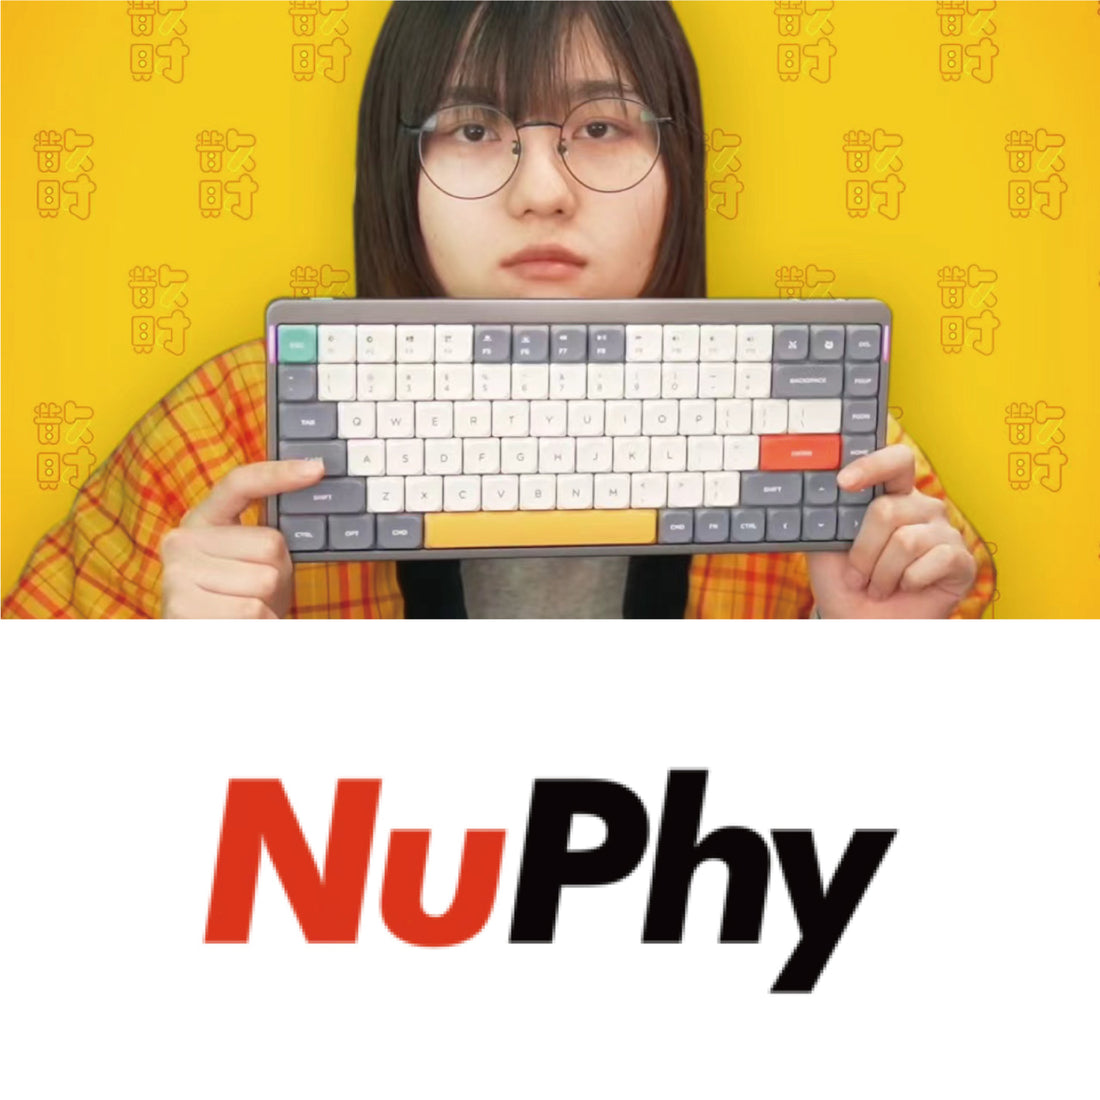 「散財TVなおしま」×「Nuphy Air75」コラボキャンペーン Start!!